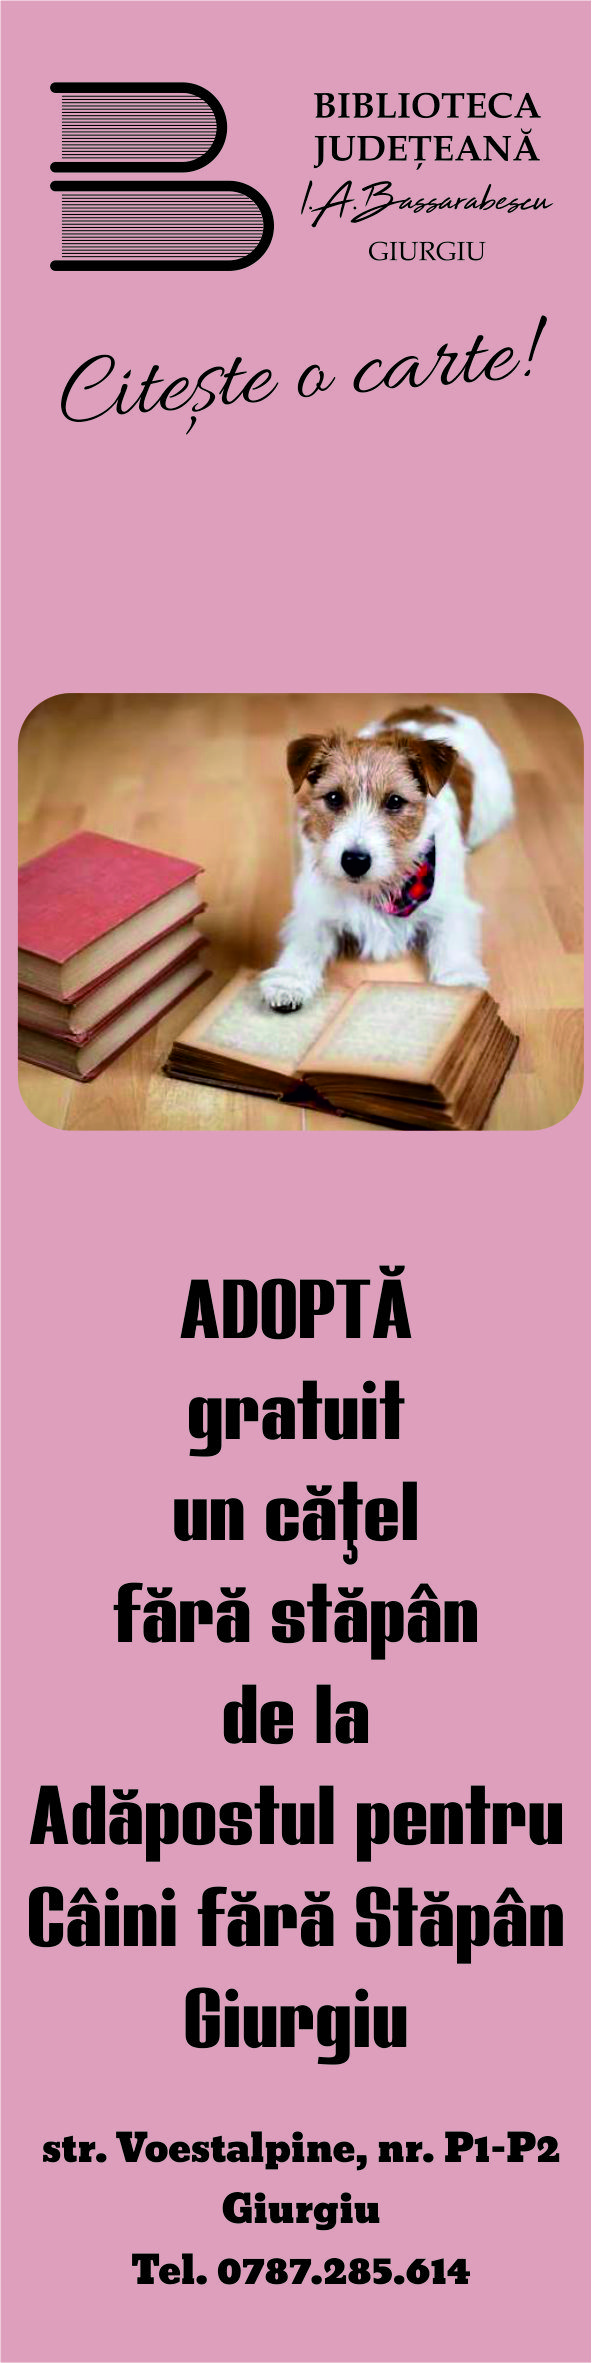 Adopţia câinilor fără stăpân, promovată de  Biblioteca Judeţeană “I.A. Bassarabescu”Giurgiu